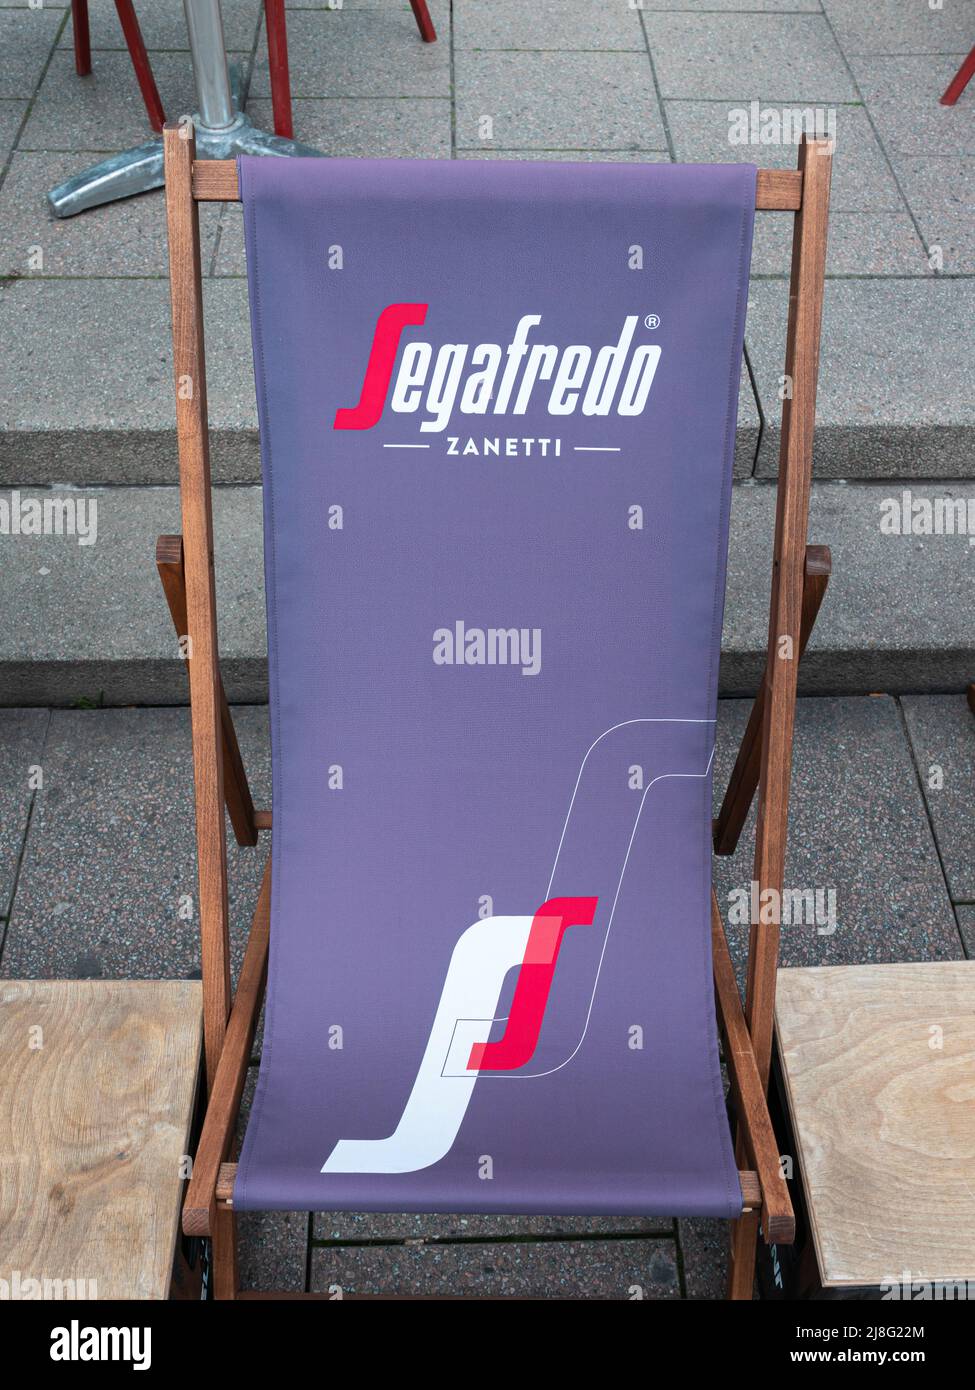 Freiburg im Breisgau, Allemagne - 13 avril 2022: Chaise longue avec signe publicitaire de la compagnie de café Segafredo Zanetti Banque D'Images